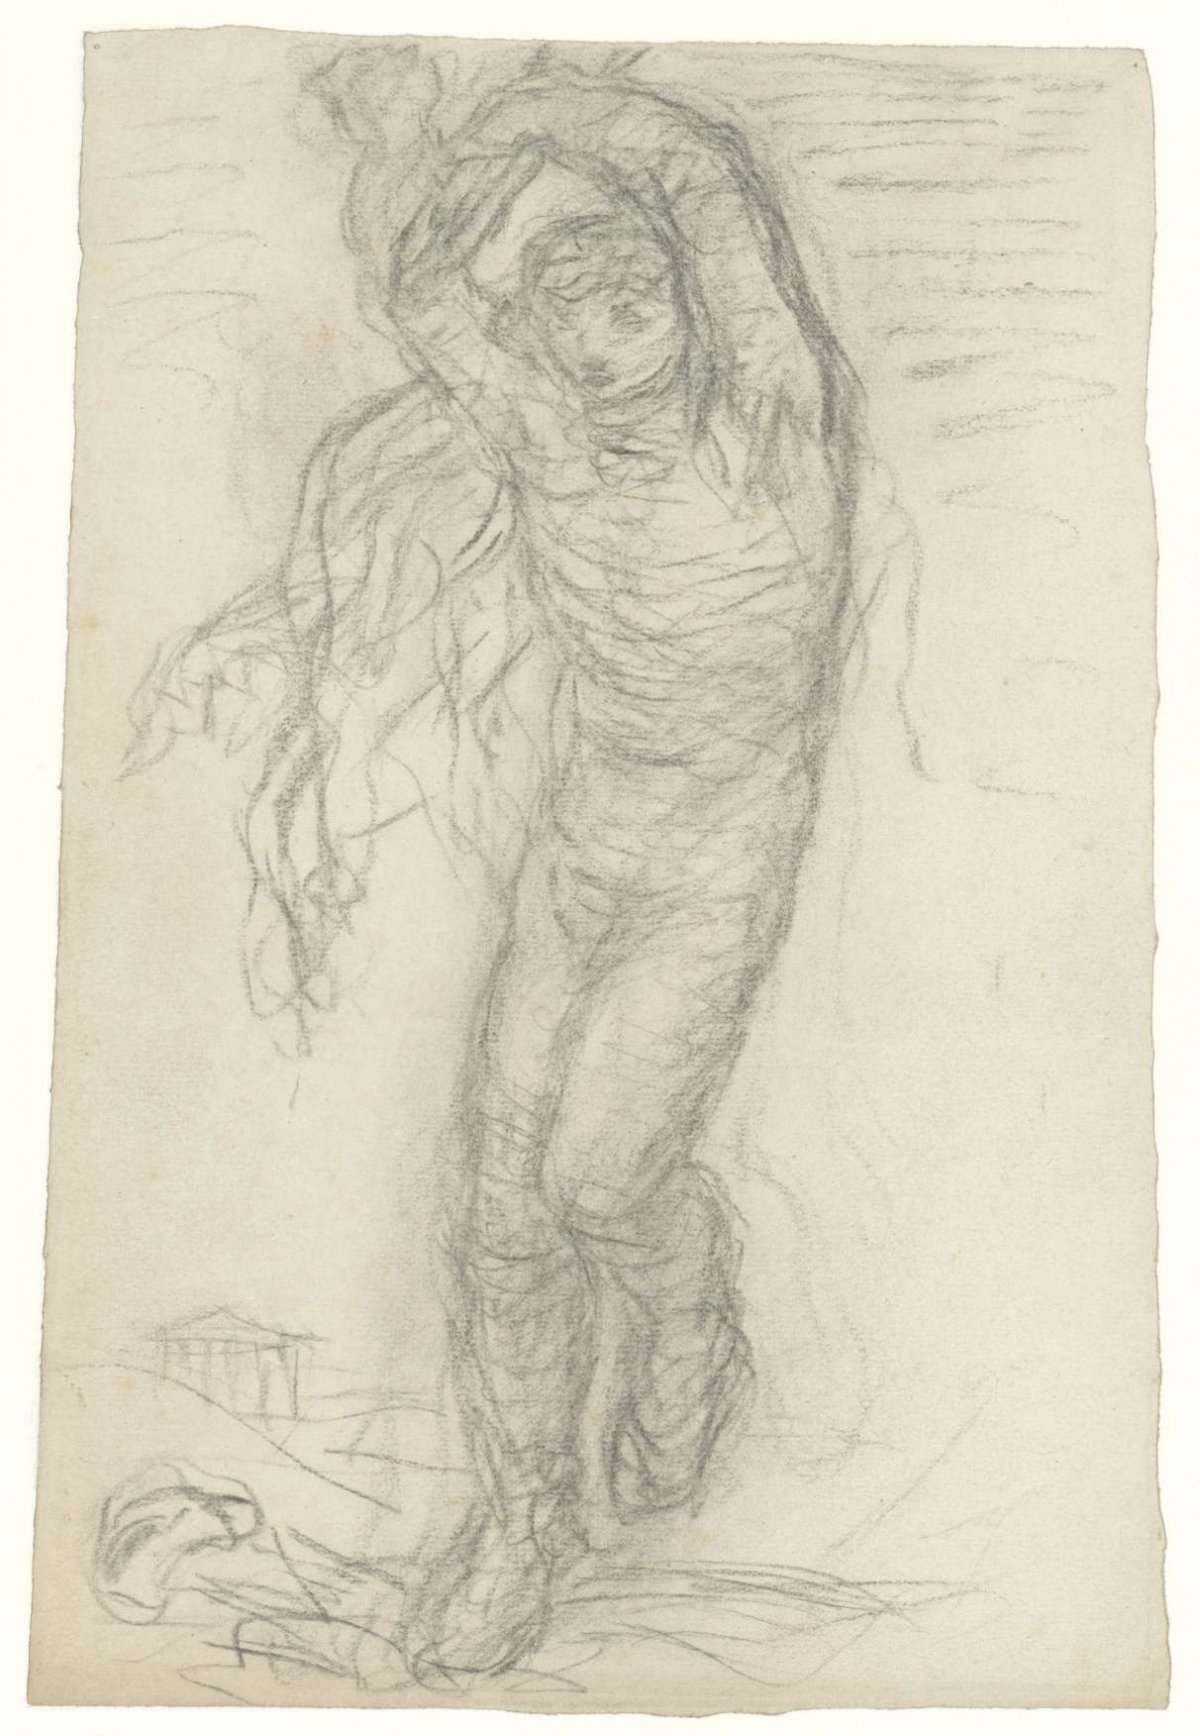 Dancing figure, from the front, Matthijs Maris, c. 1879 - c. 1880